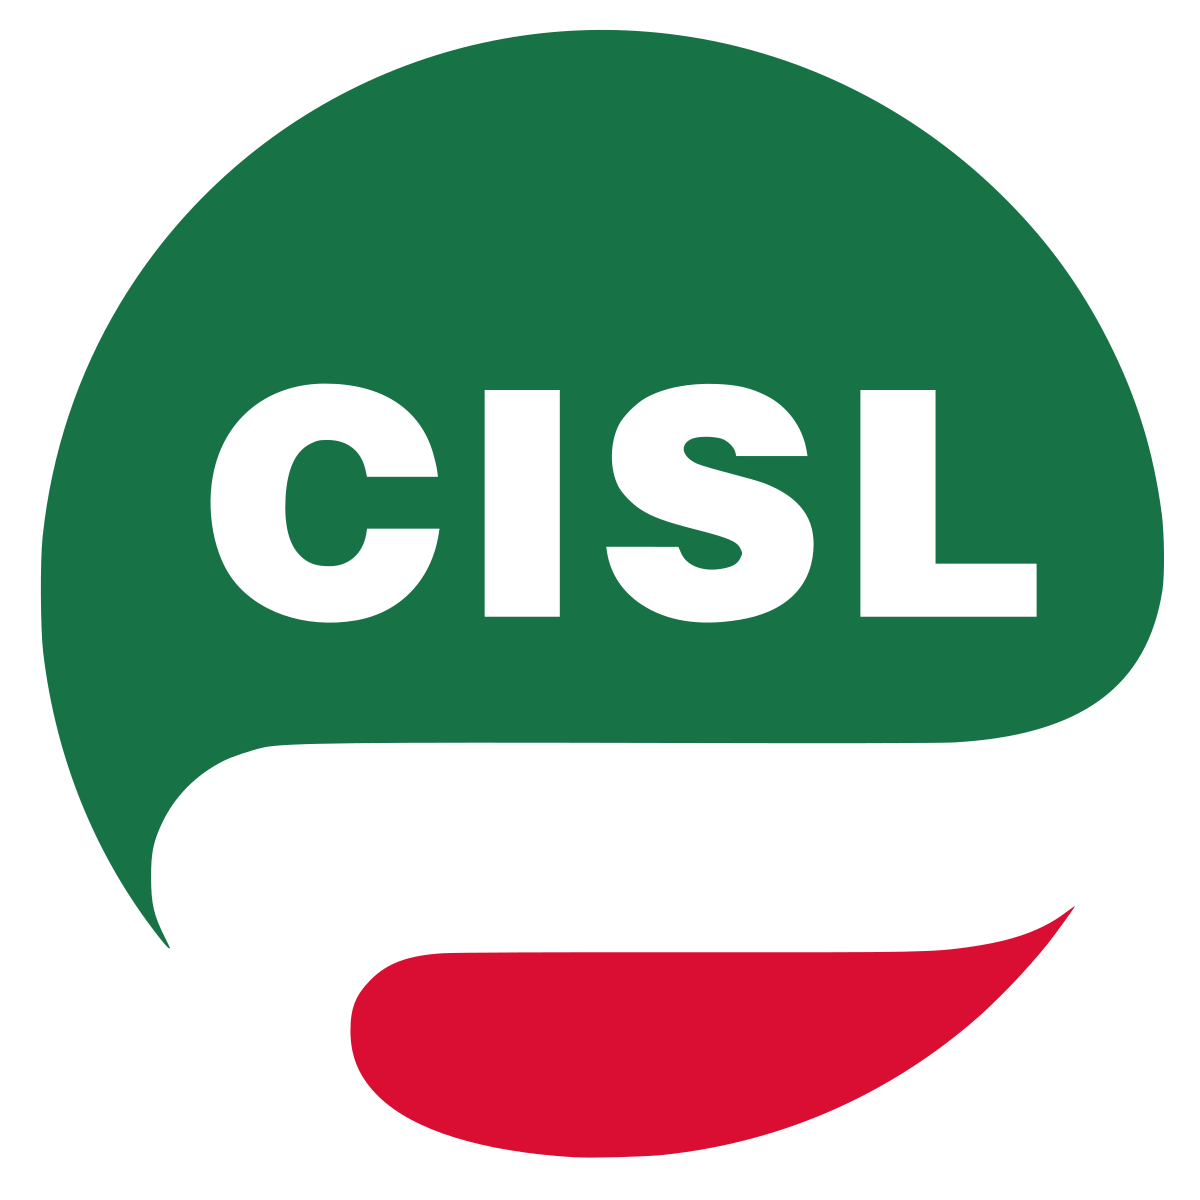 CISL - Confederazione italiana sindacati lavoratori